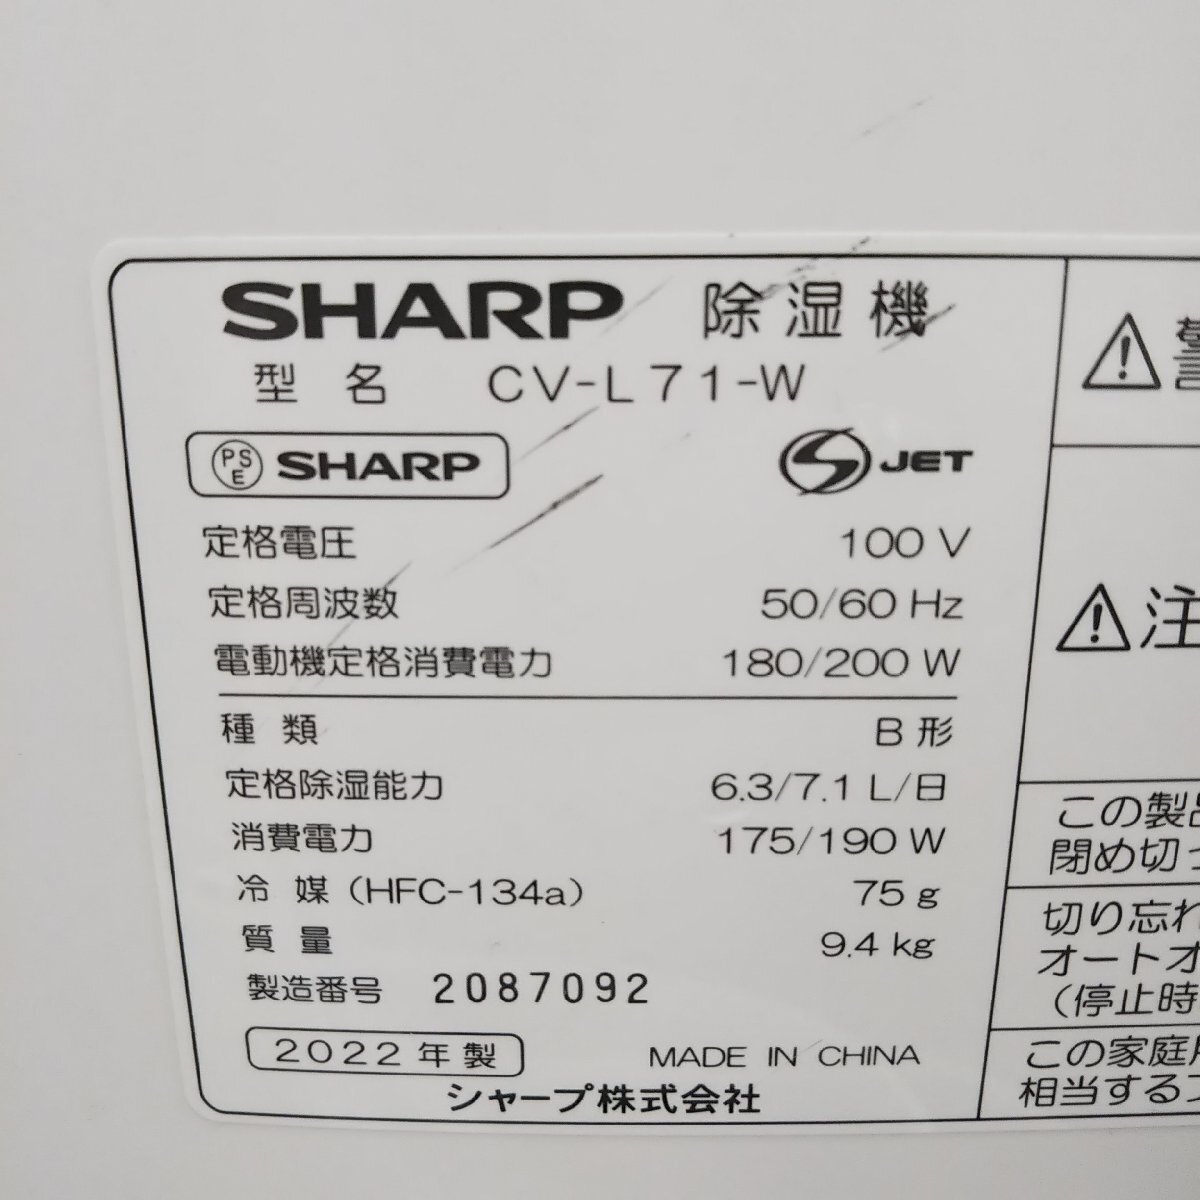 * рабочий товар SHARP sharp одежда сухой осушитель CV-L71W 2022 год производства Saitama получение приветствуется * Saitama Toda магазин 